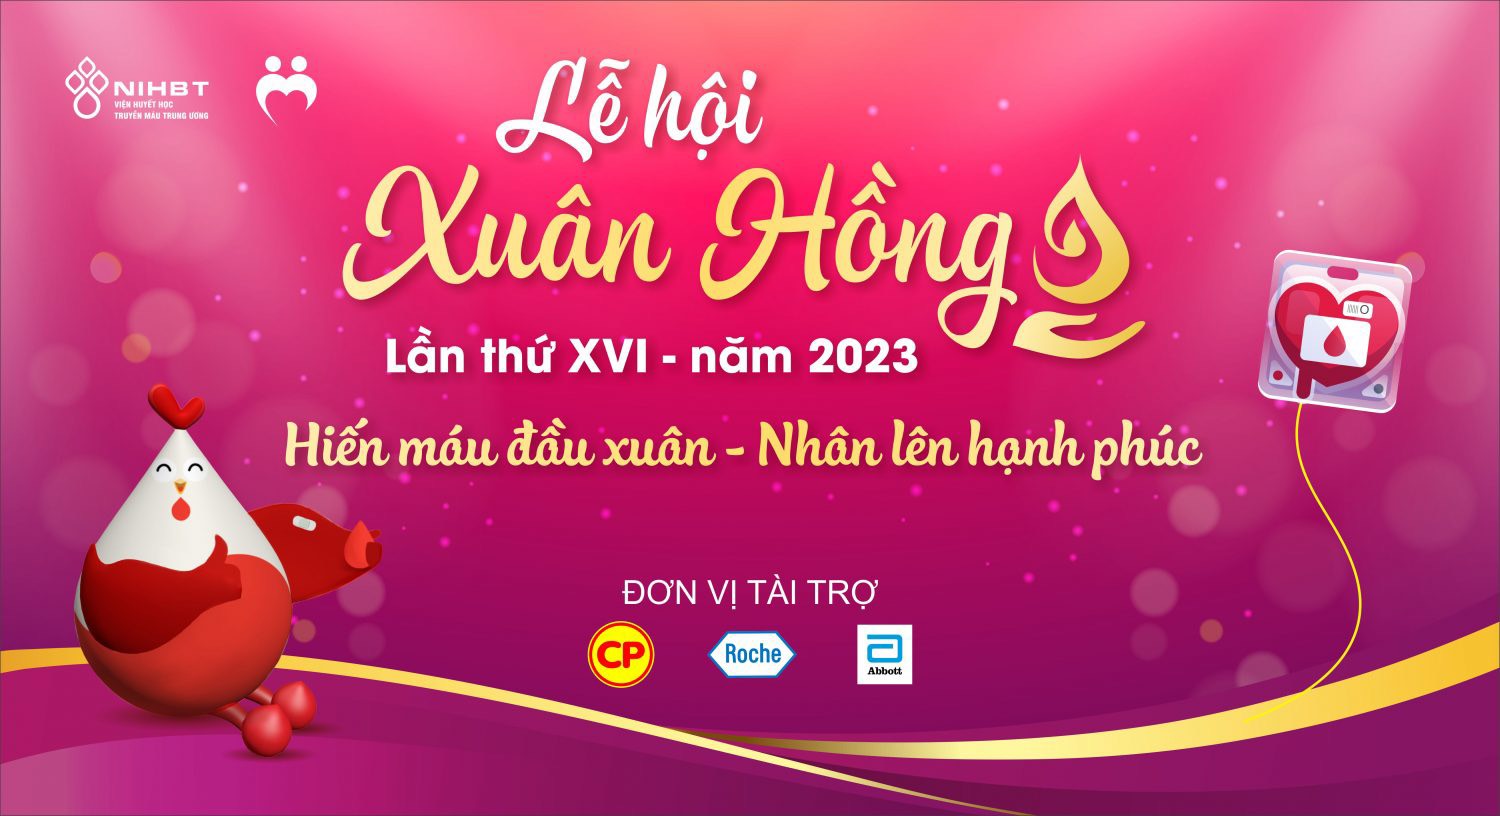 Người dân sinh sống trên địa bàn Hà Nội tưng bừng chào đón lễ hội “Xuân hồng” năm 2023  - Ảnh 3.